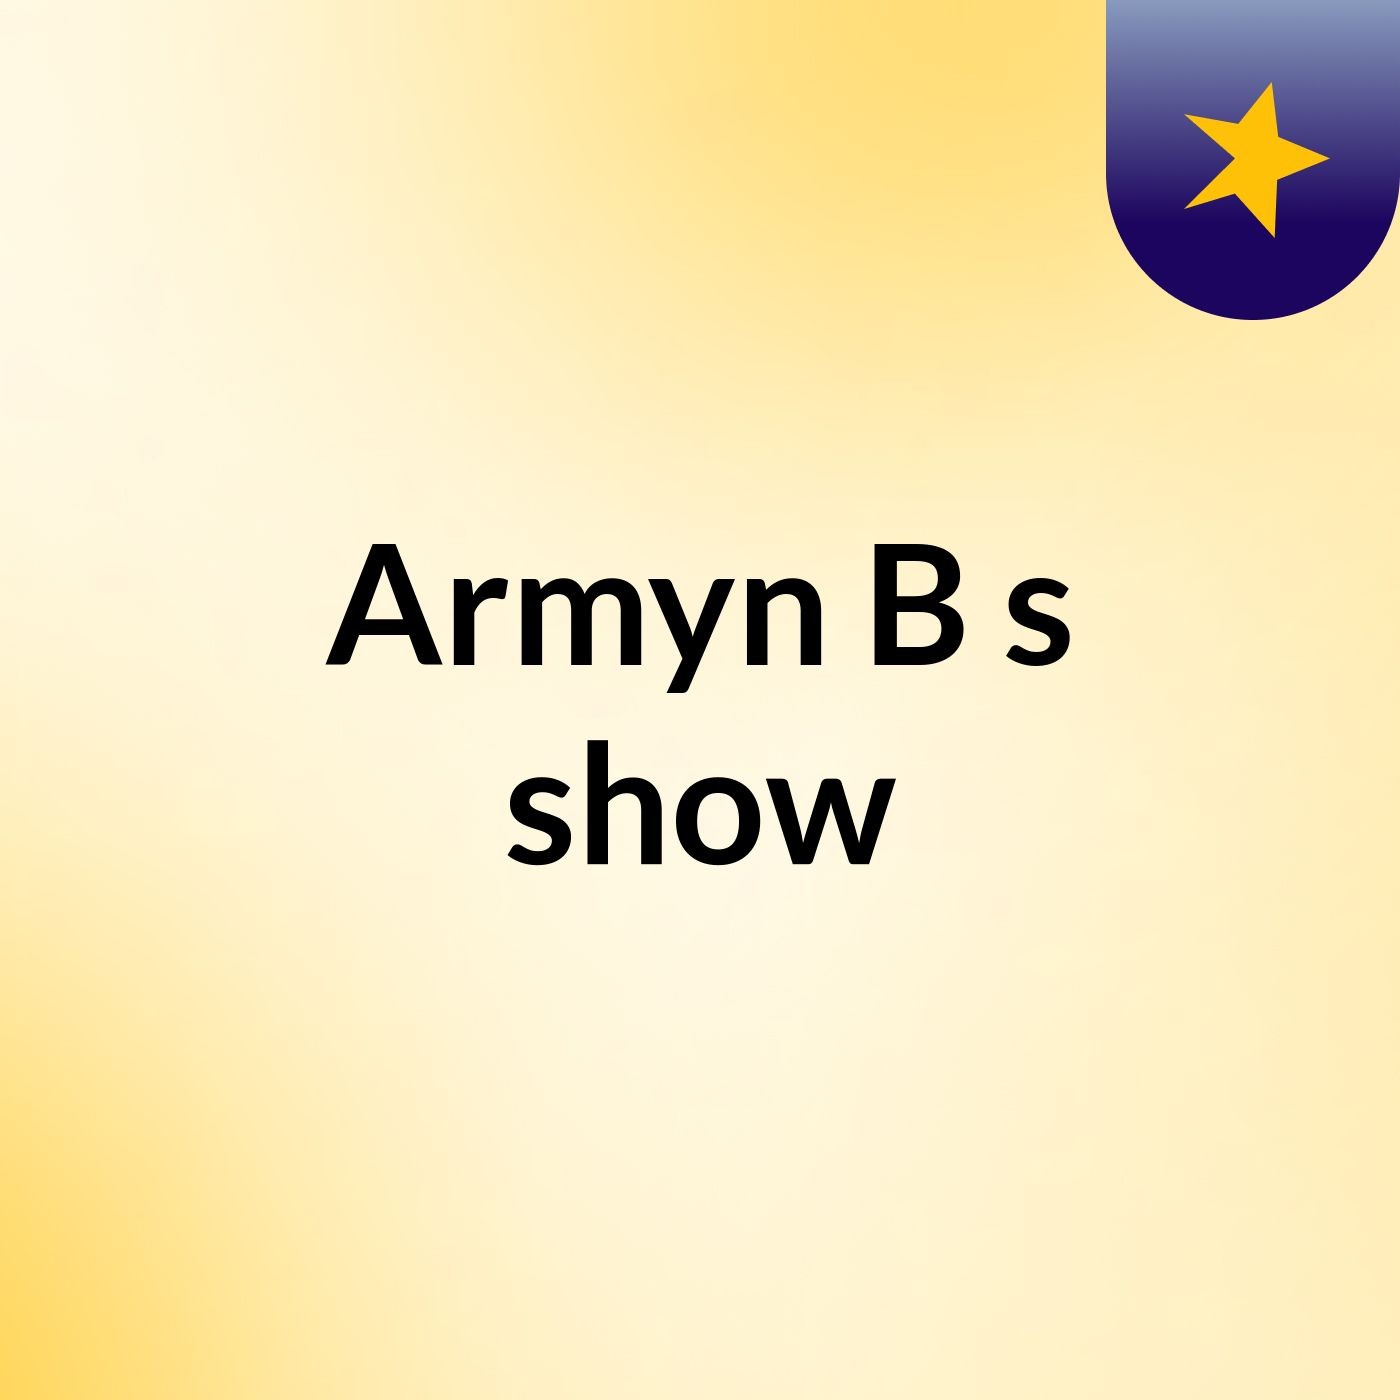 Armyn B's show